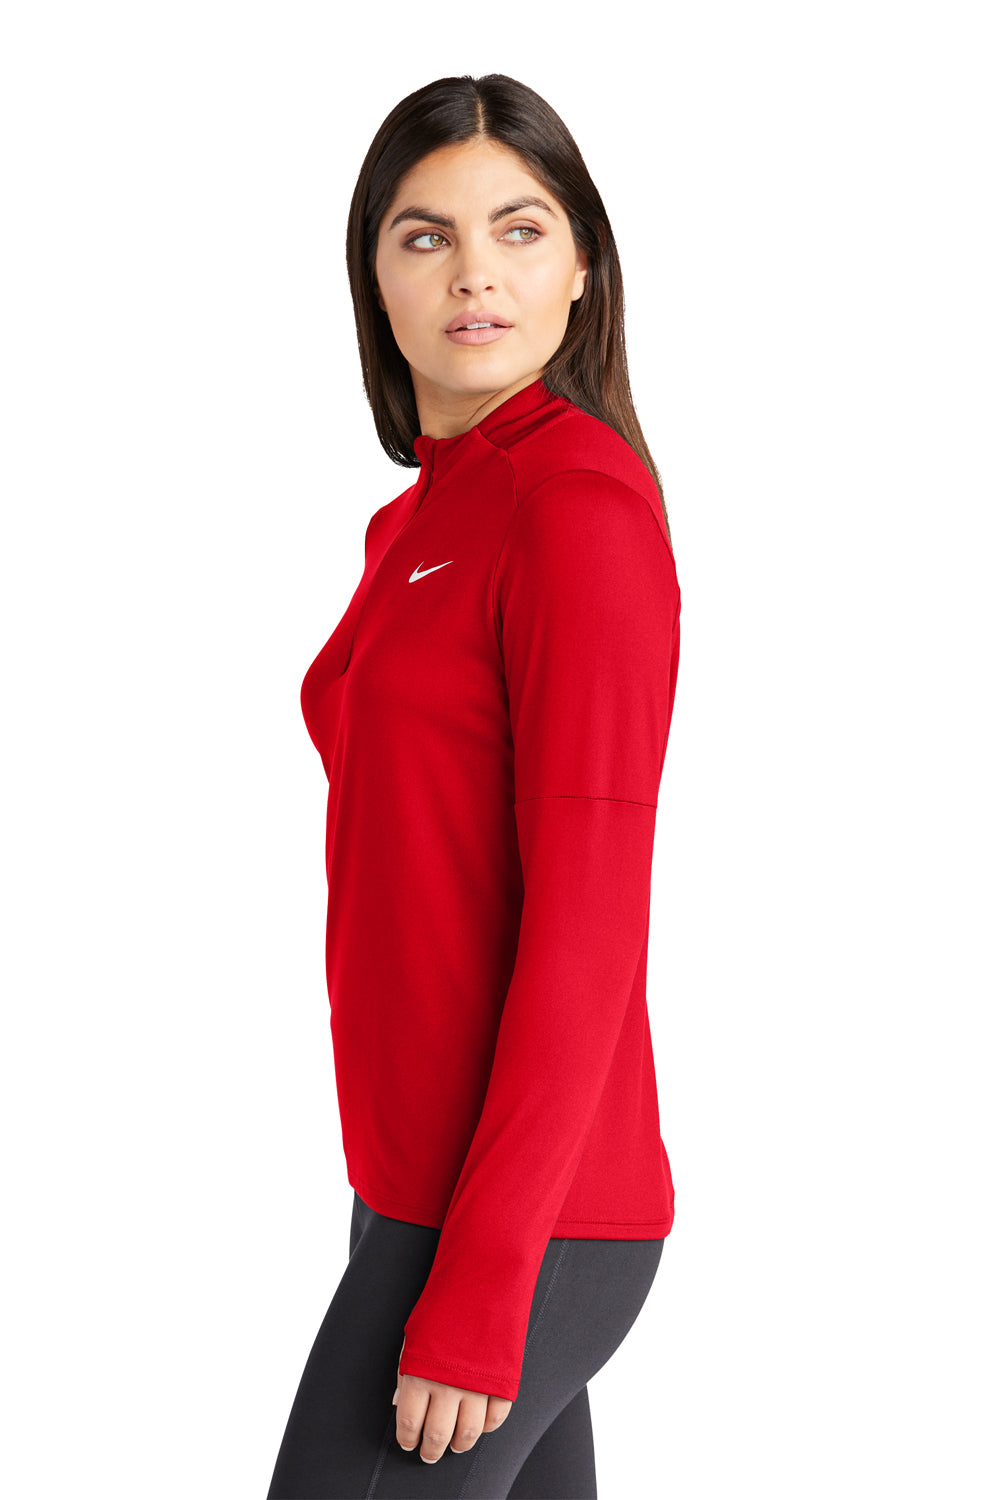 Nike NKDH4951 Womens Element Dri-Fit Moisture Wicking 1/4 Zip Sweatshirt Scarlet Red Model Side